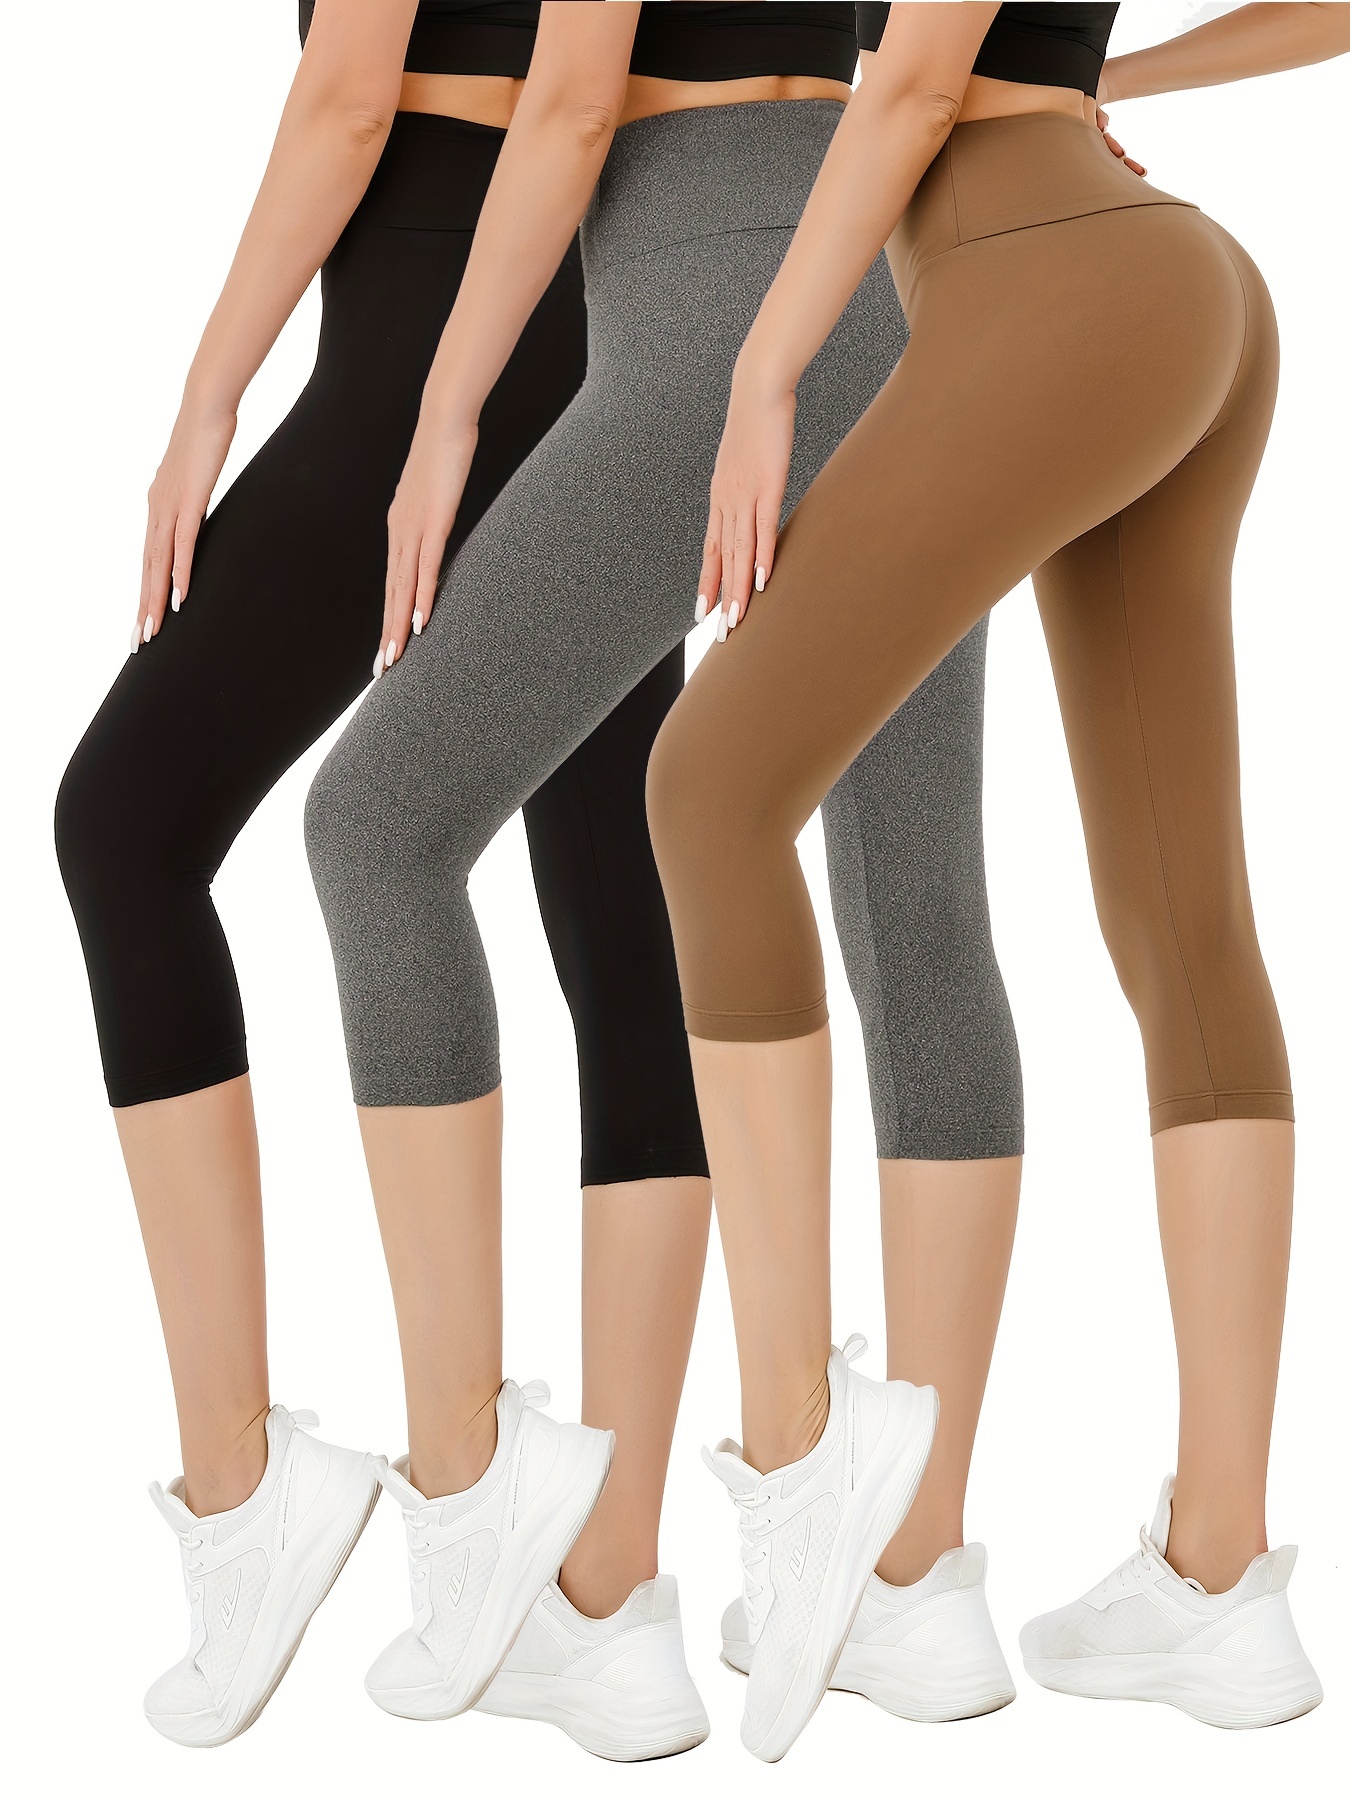 Buy TNNZEET 7 Pack Capri Leggings for Women, High Waisted Soft